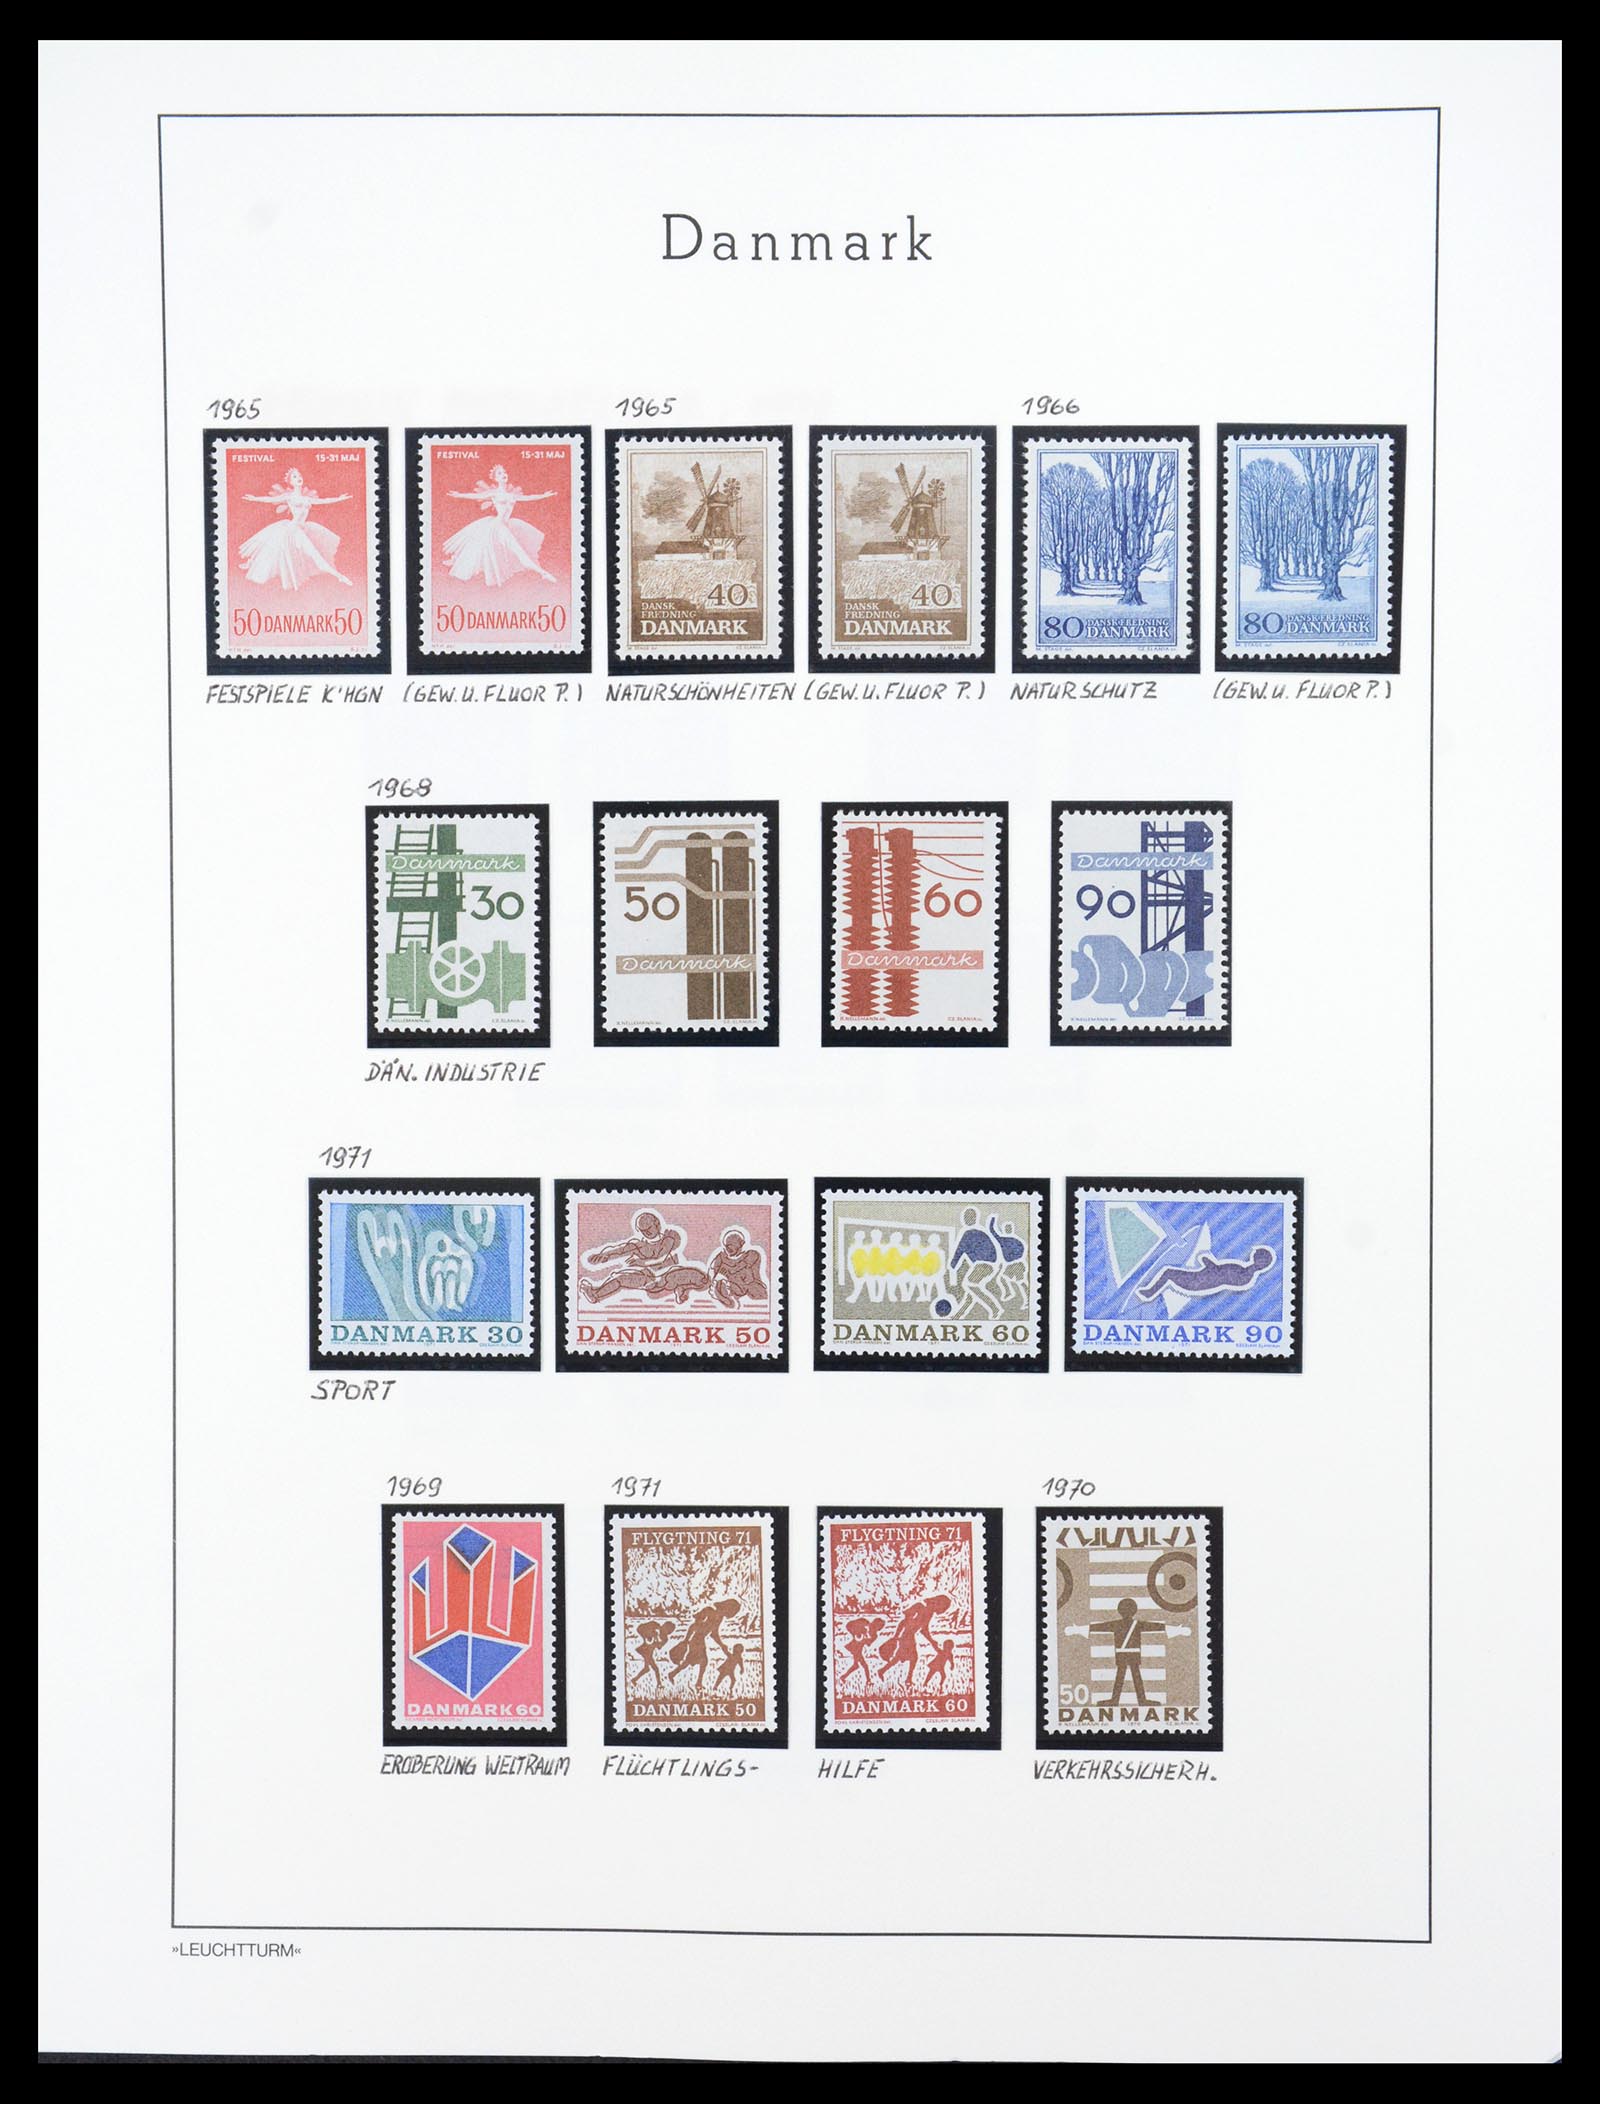 36612 106 - Stamp collection 36612 Denemarken 1851-1990.